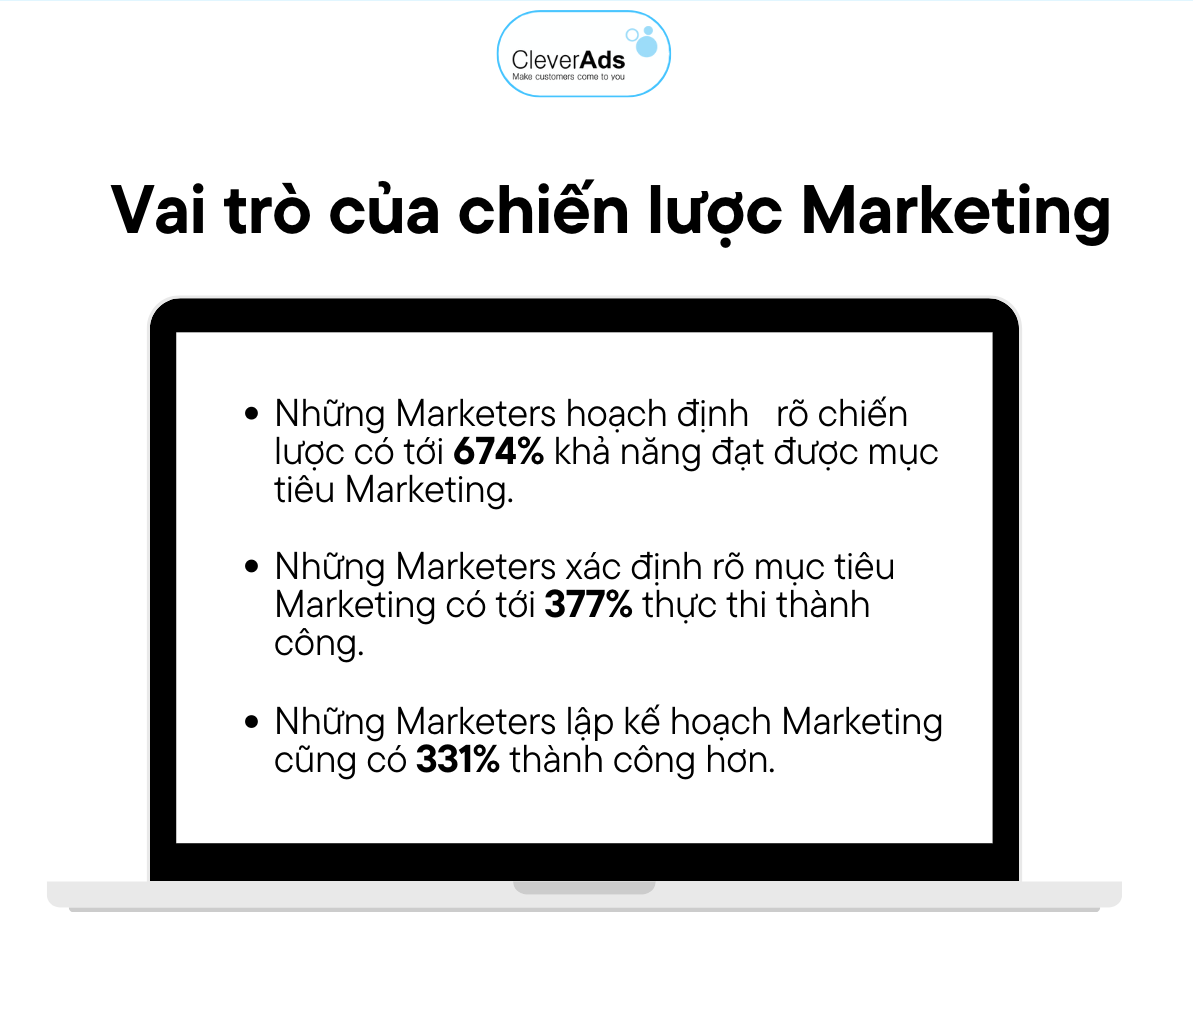 Chiến lược Marketing